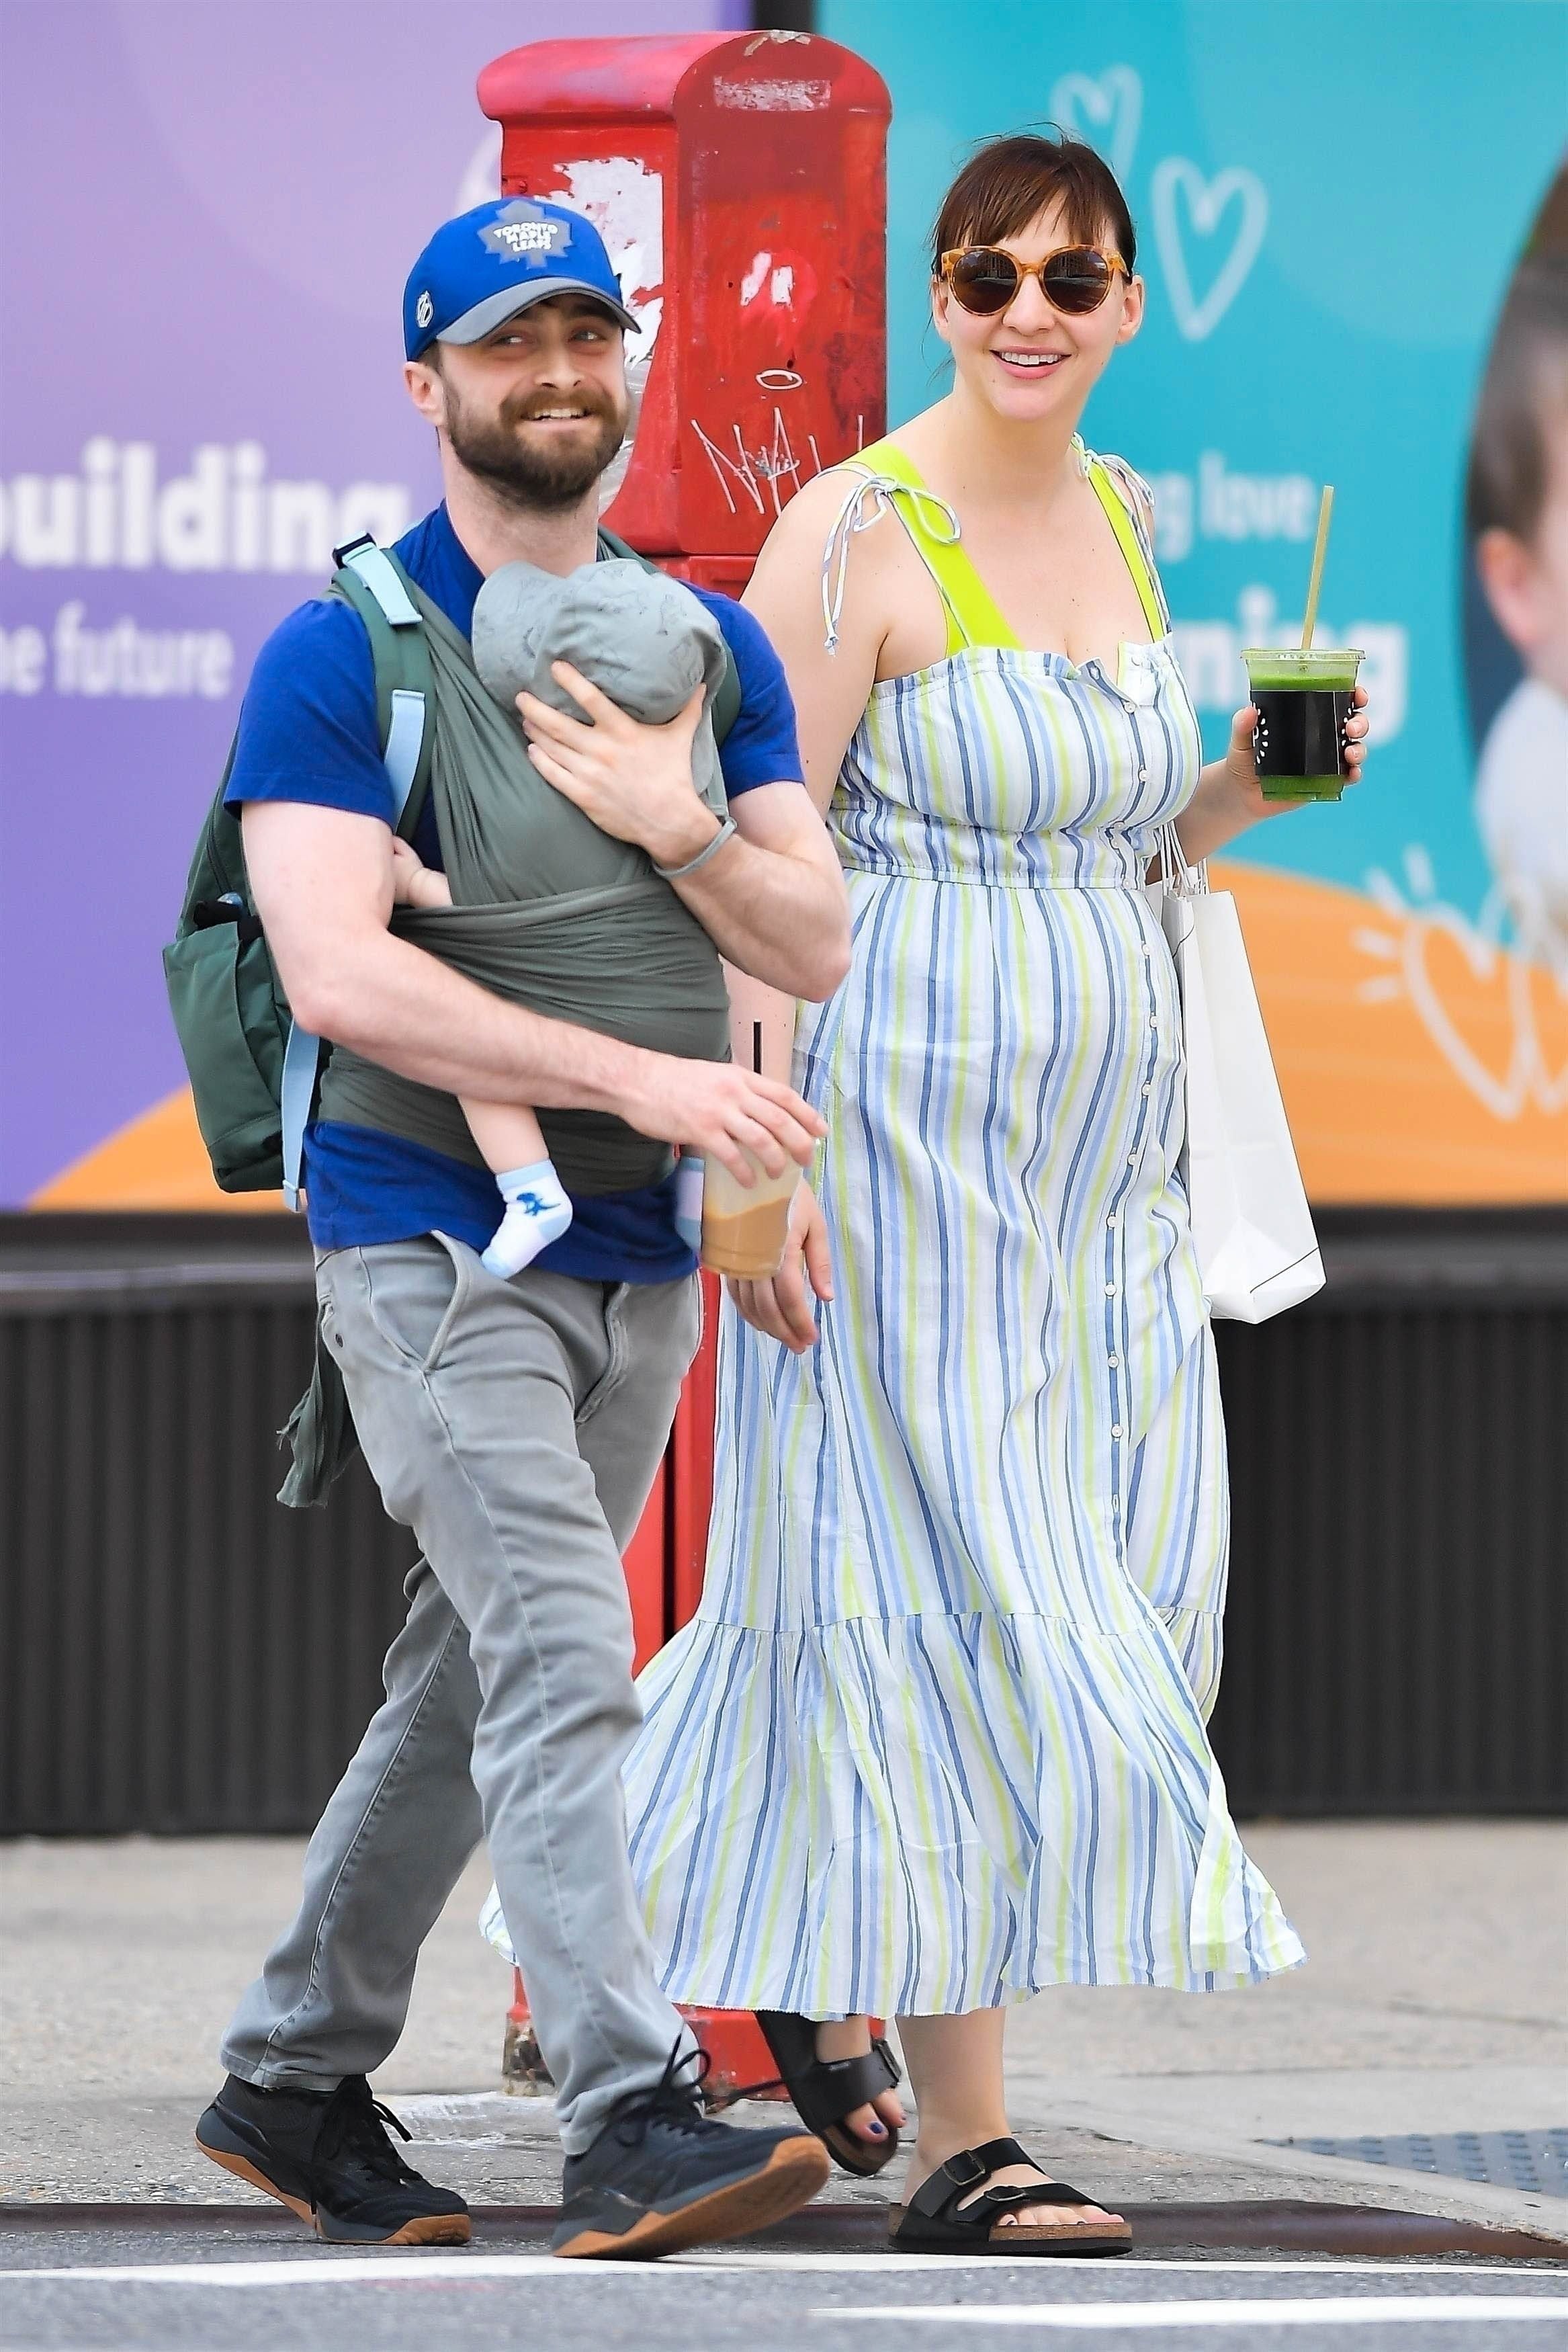 La estrella de Harry Potter Daniel Radcliffe y su pareja Erin Darke han sido vistos paseando con su bebé por el West Village  (Photo © 2023 Backgrid/The Grosby Group)

